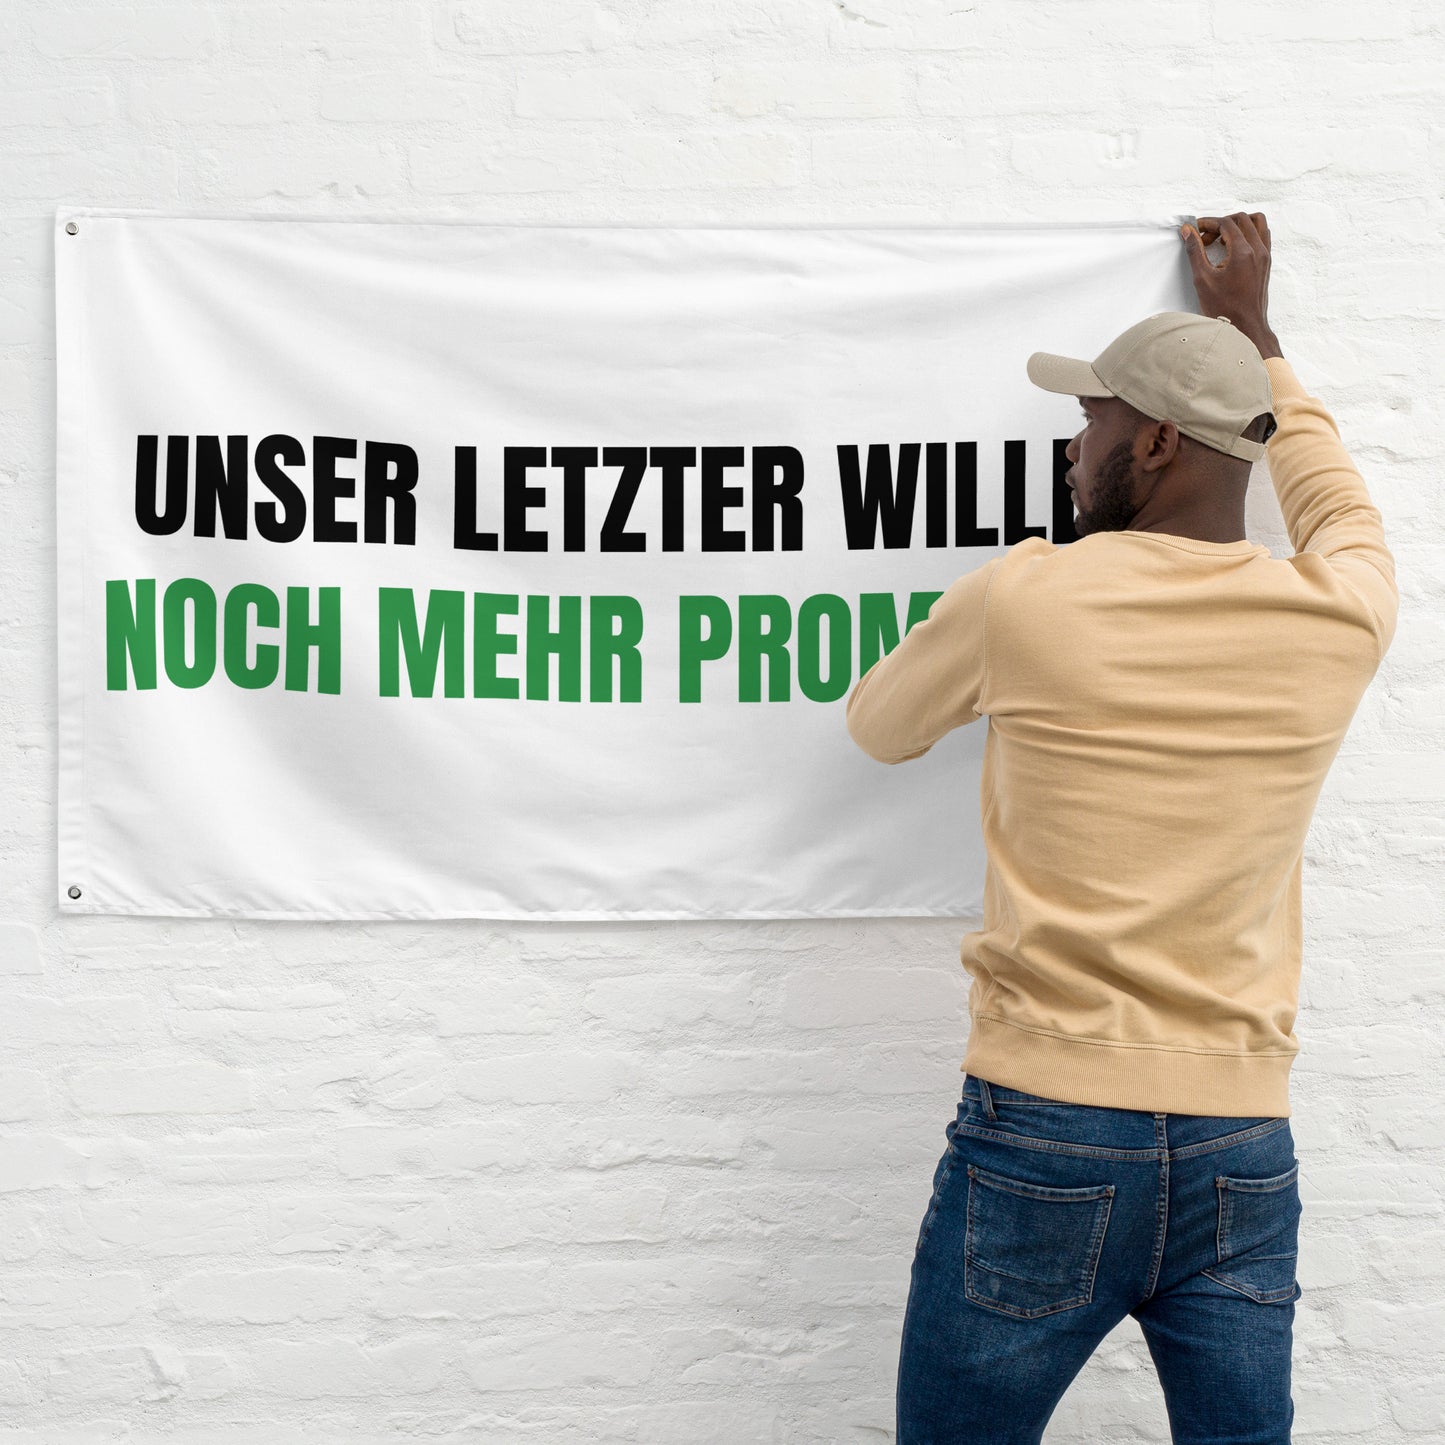 UNSER LETZTER WILLE - NOCH MEHR PROMILLE Flagge